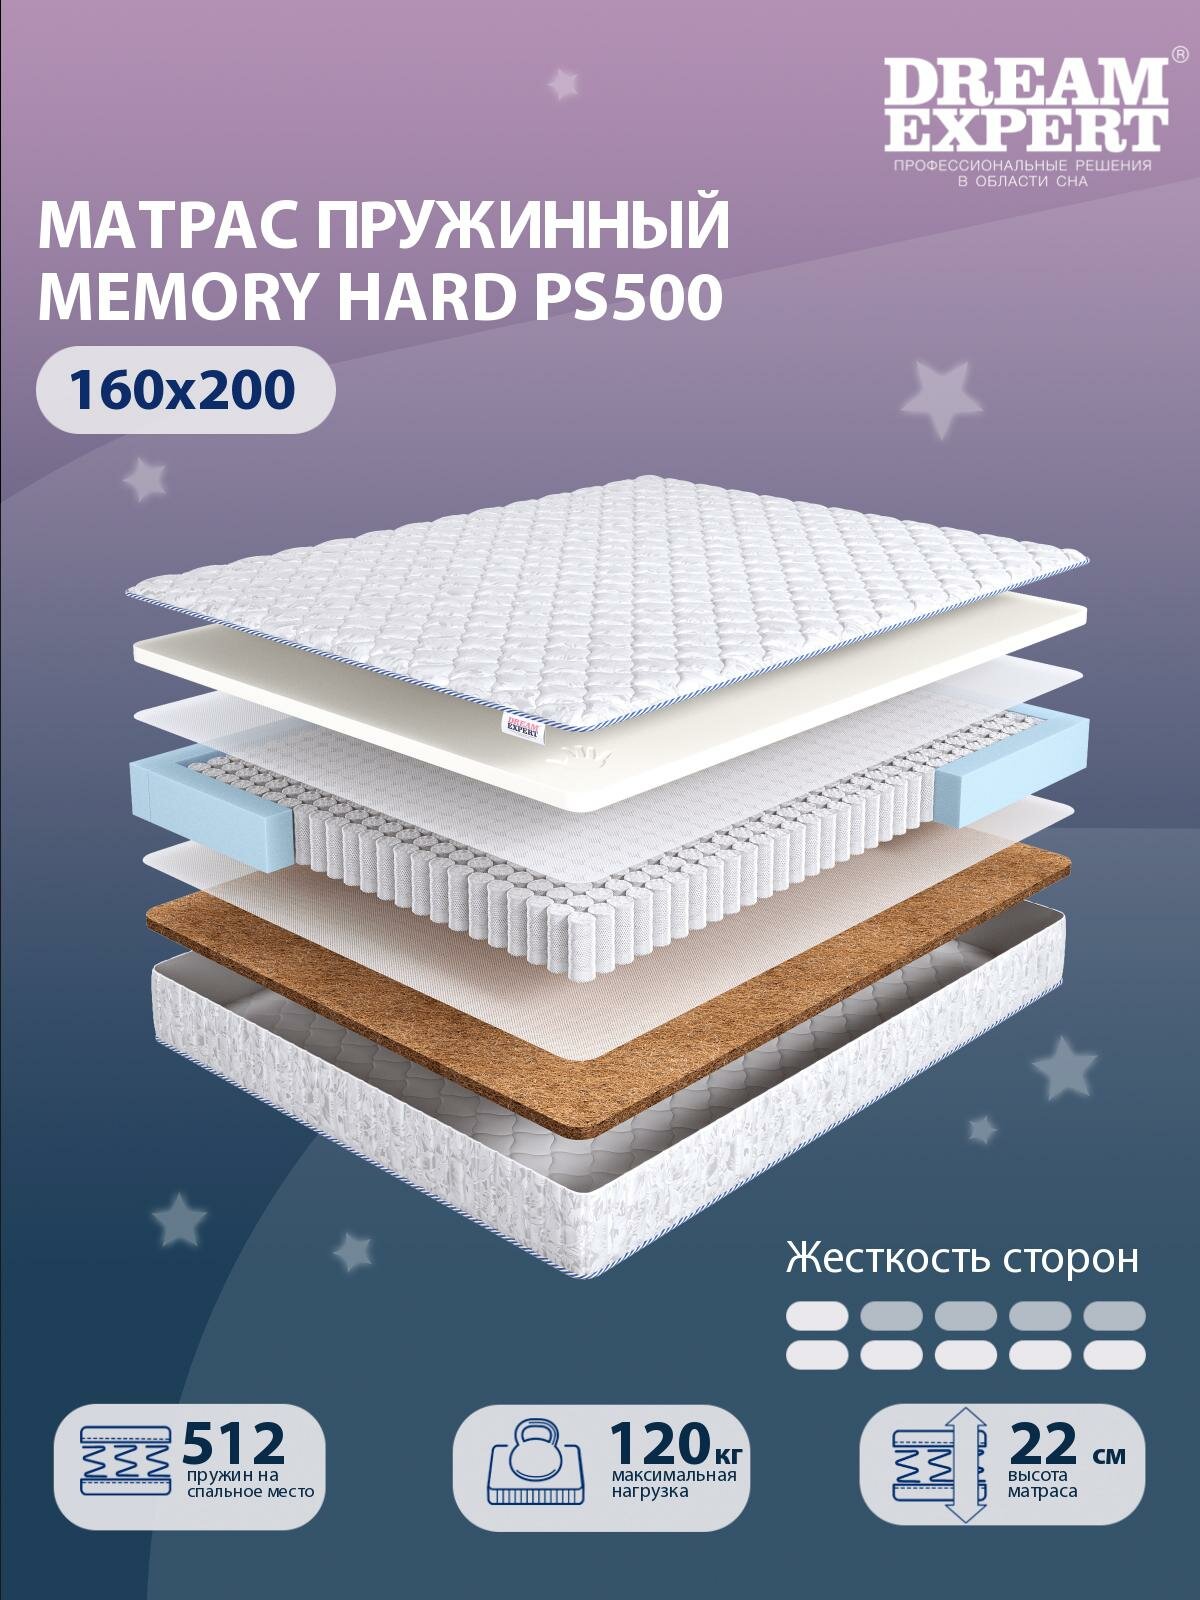 Матрас, Анатомический матрас DreamExpert Memory Hard PS500, низкая и высокая жесткость, двуспальный, независимые пружины, на кровать 160x200